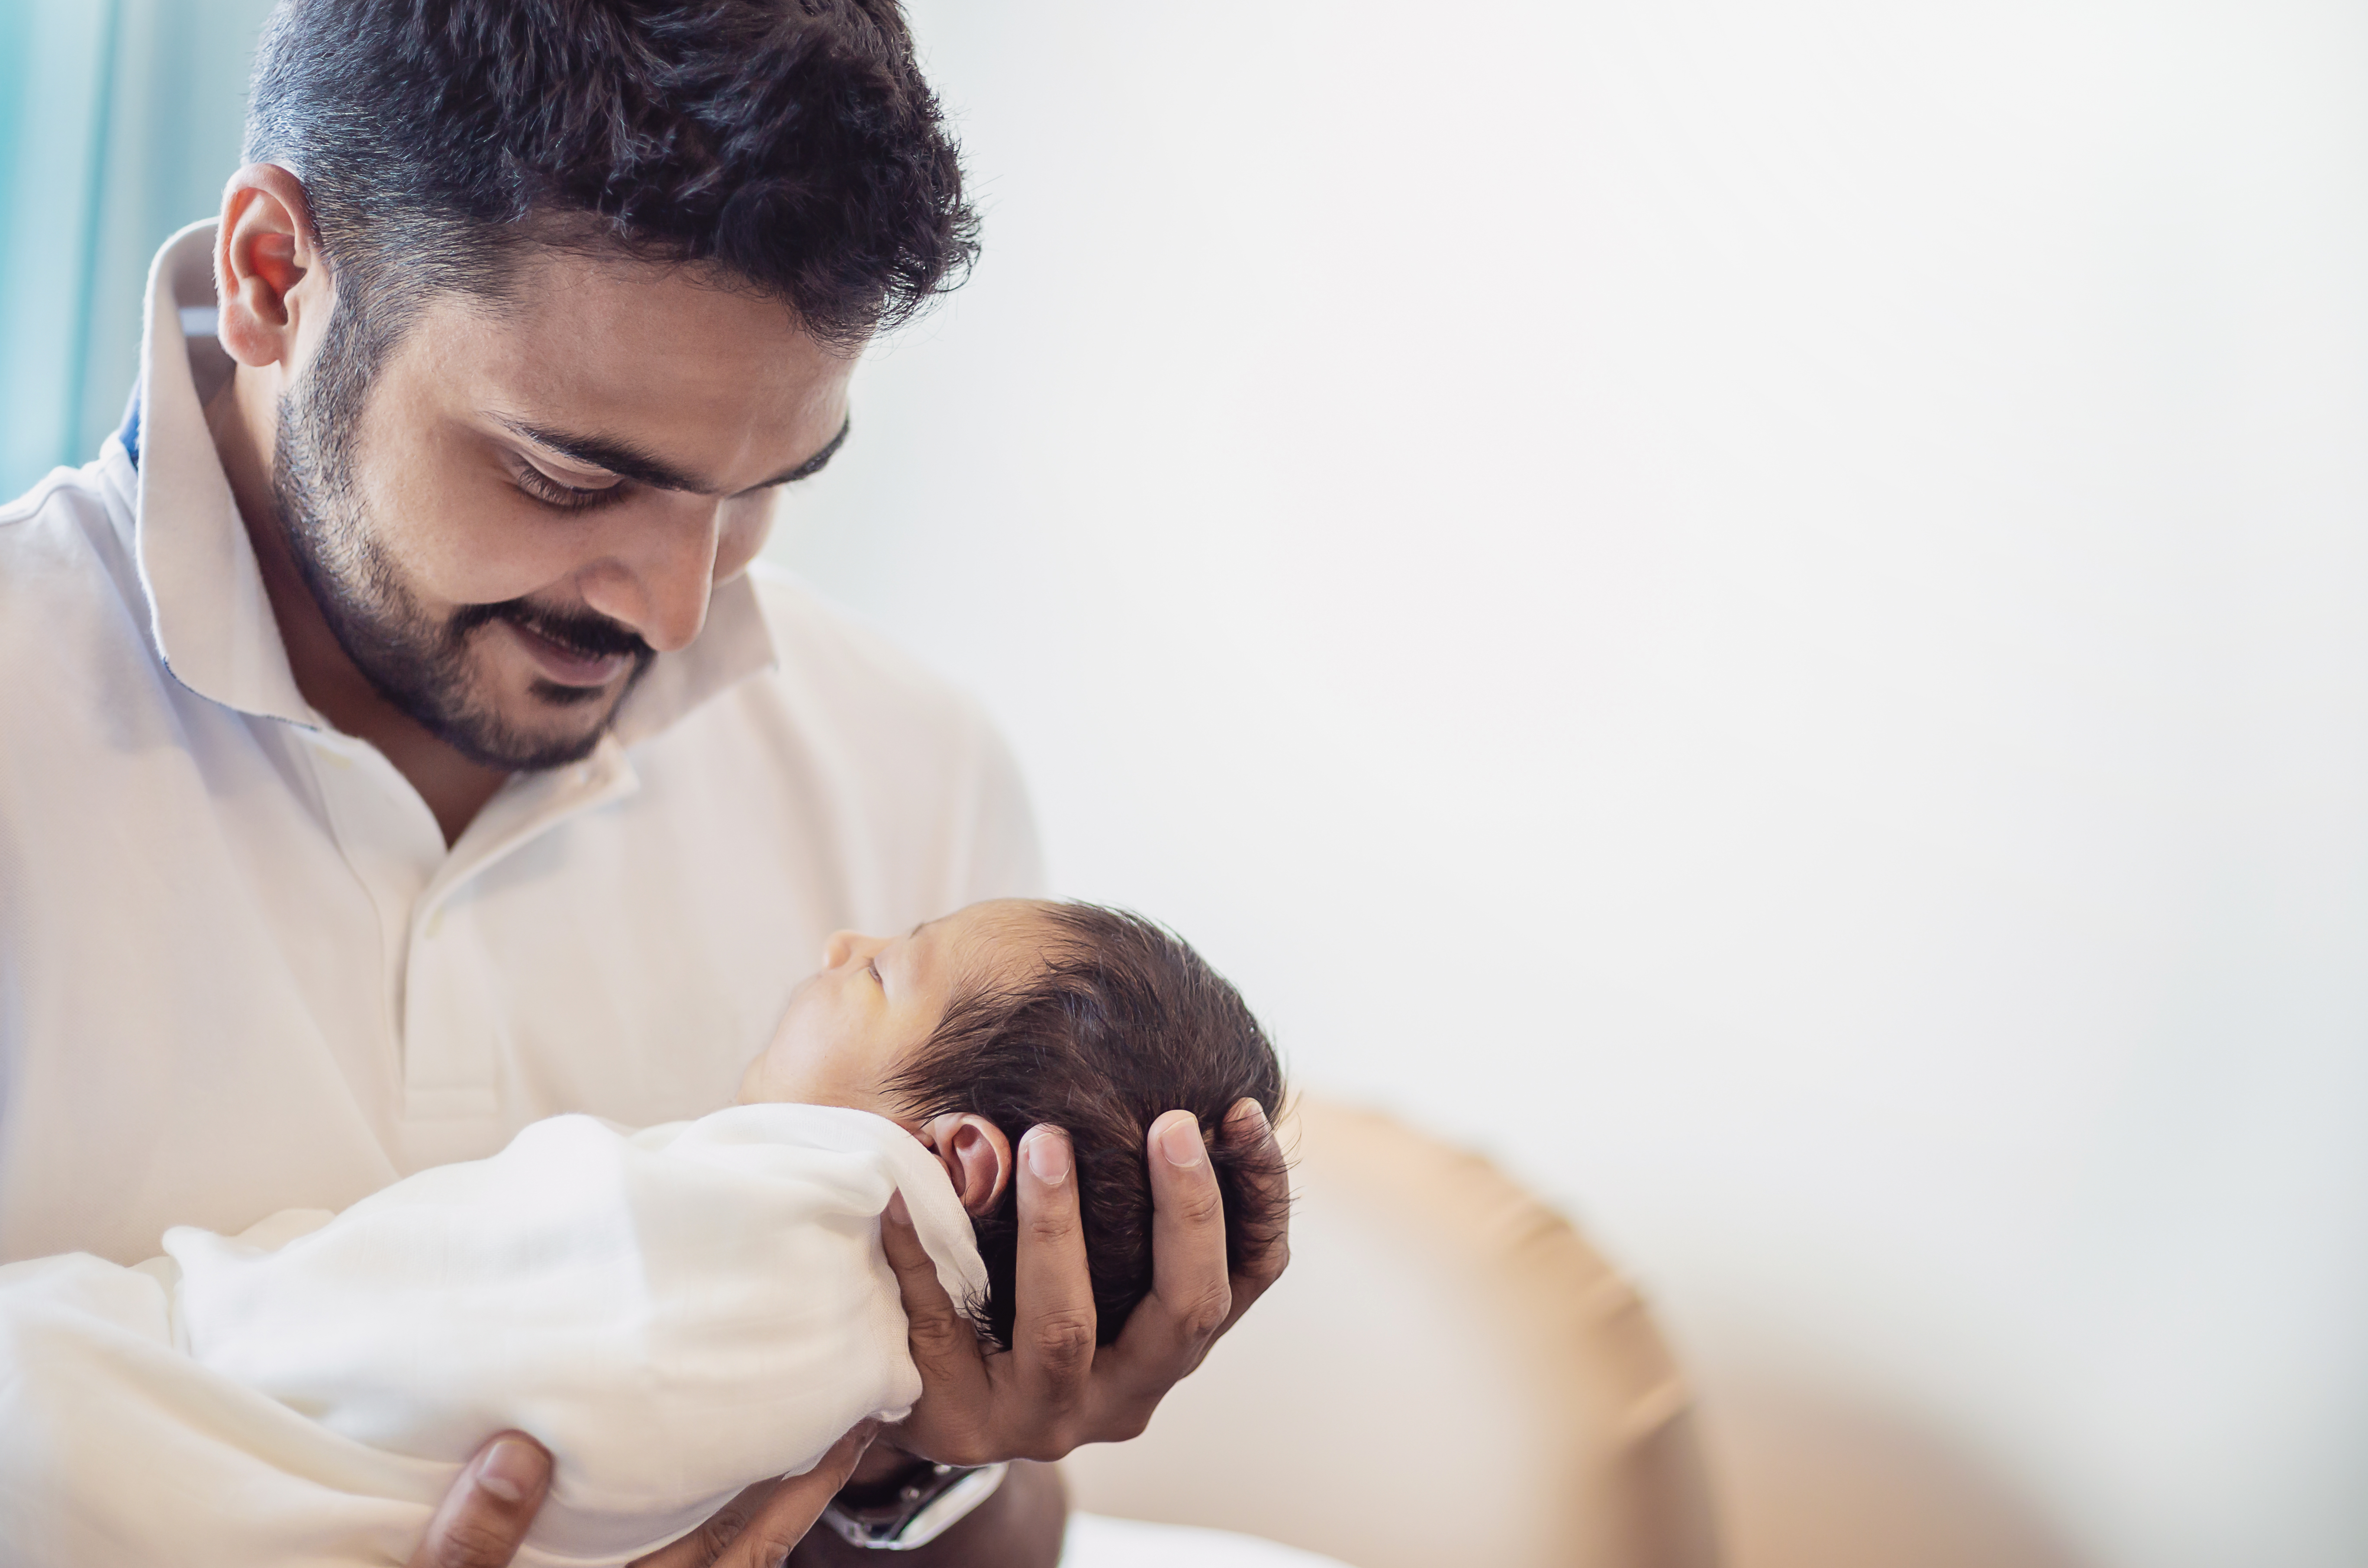 A man holding a newborn baby | Source: Shutterstock